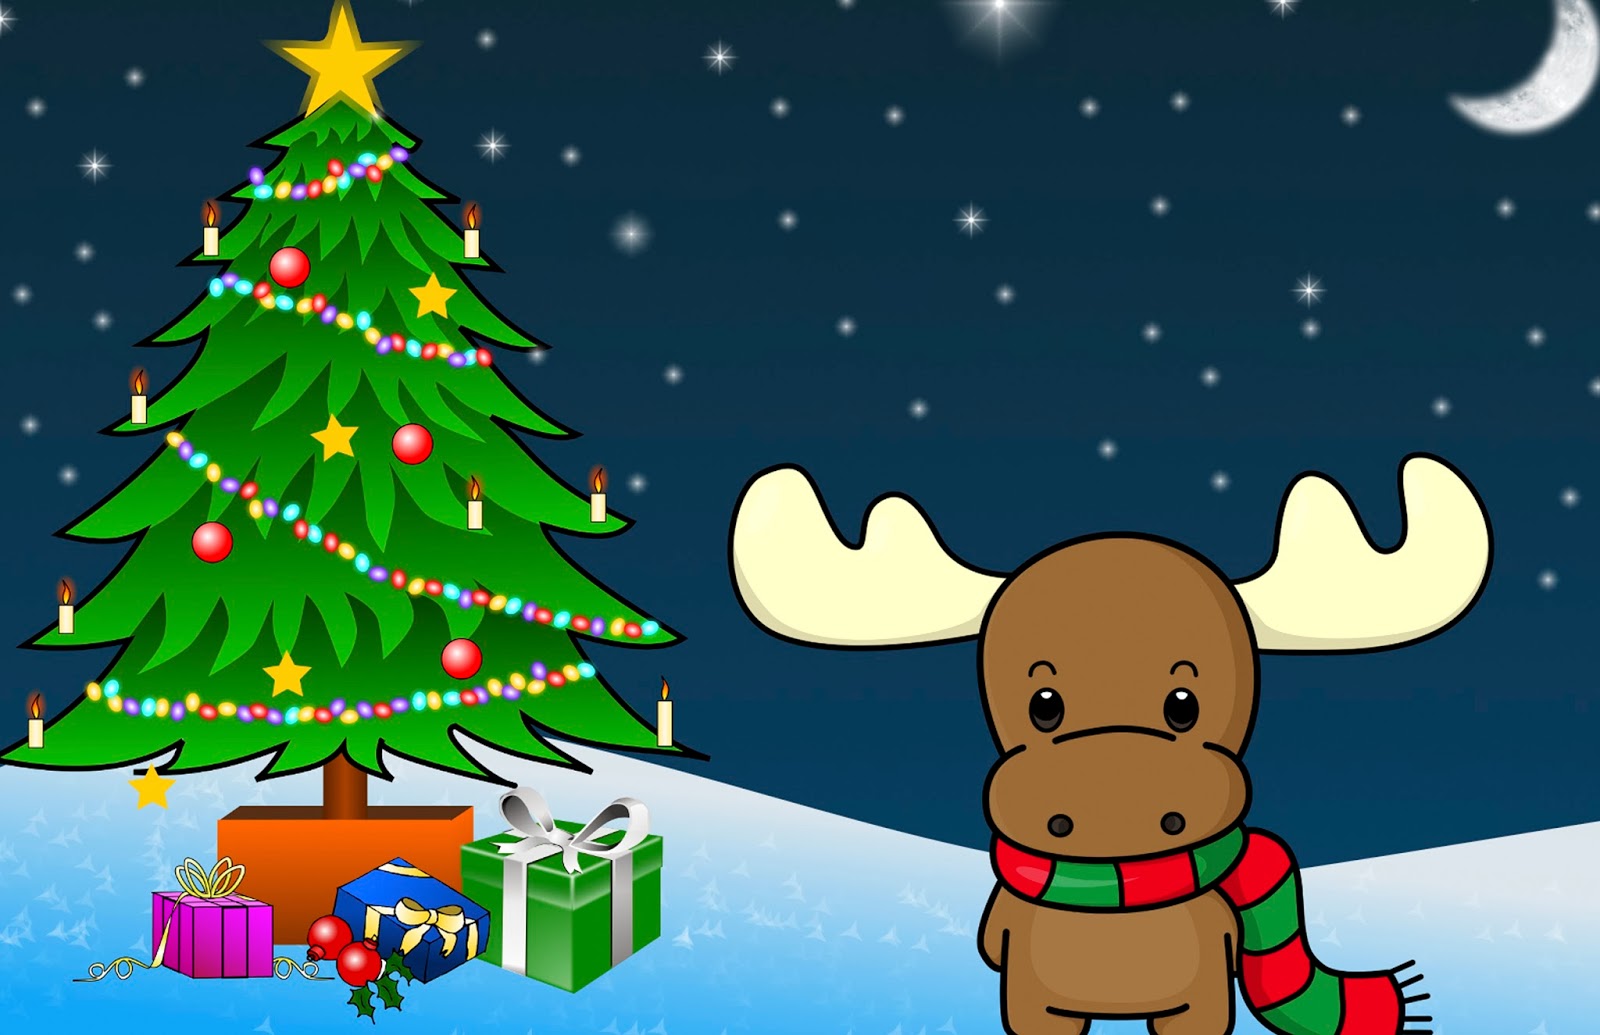 papel tapiz de navidad para niños,árbol de navidad,navidad,dibujos animados,nochebuena,árbol